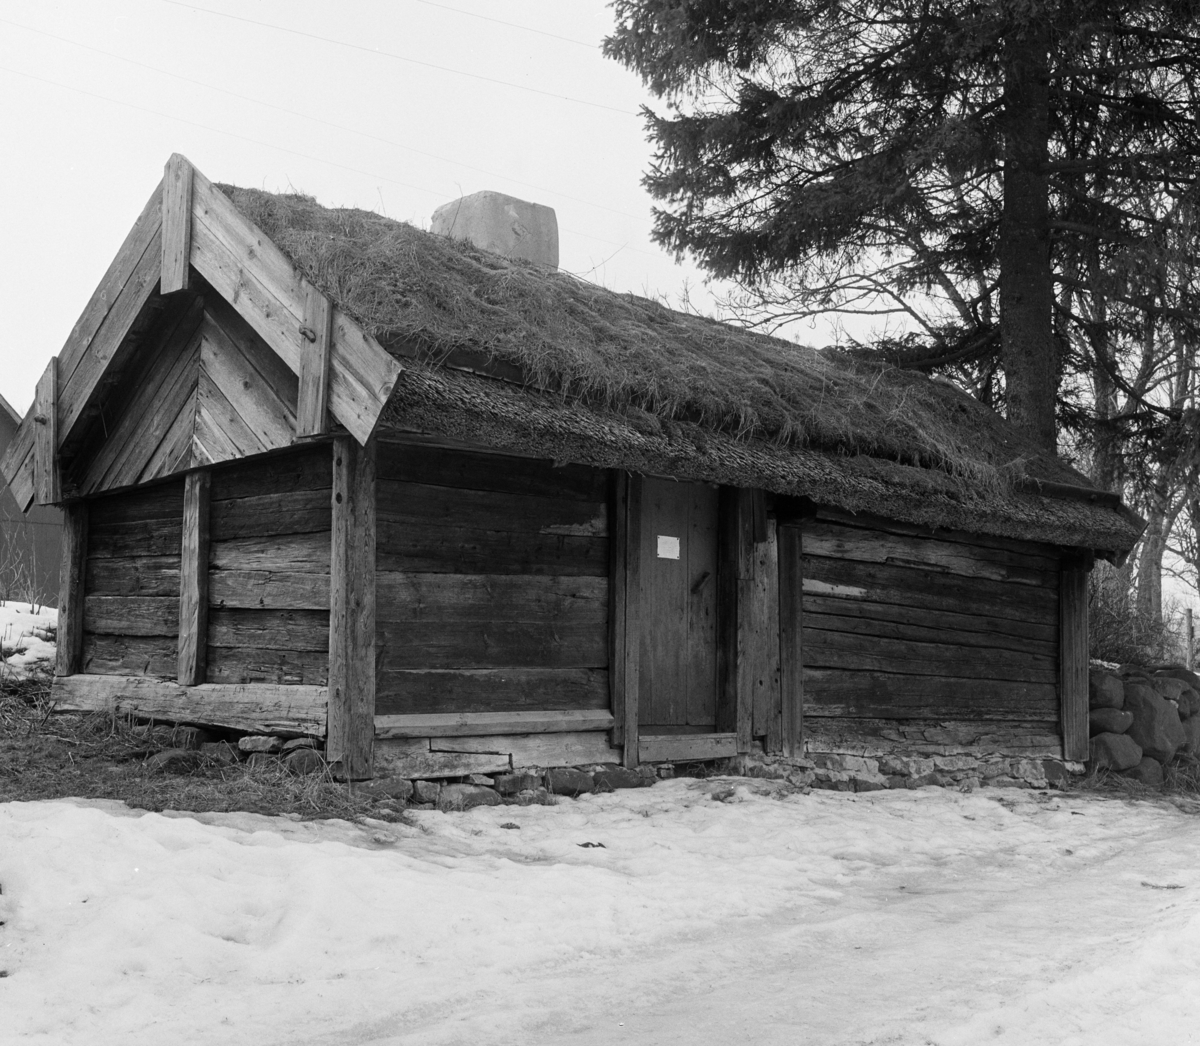 Ytongfabrik, Uddagården
Exteriör, timmerstuga med torvtak vid tall i snölandskap